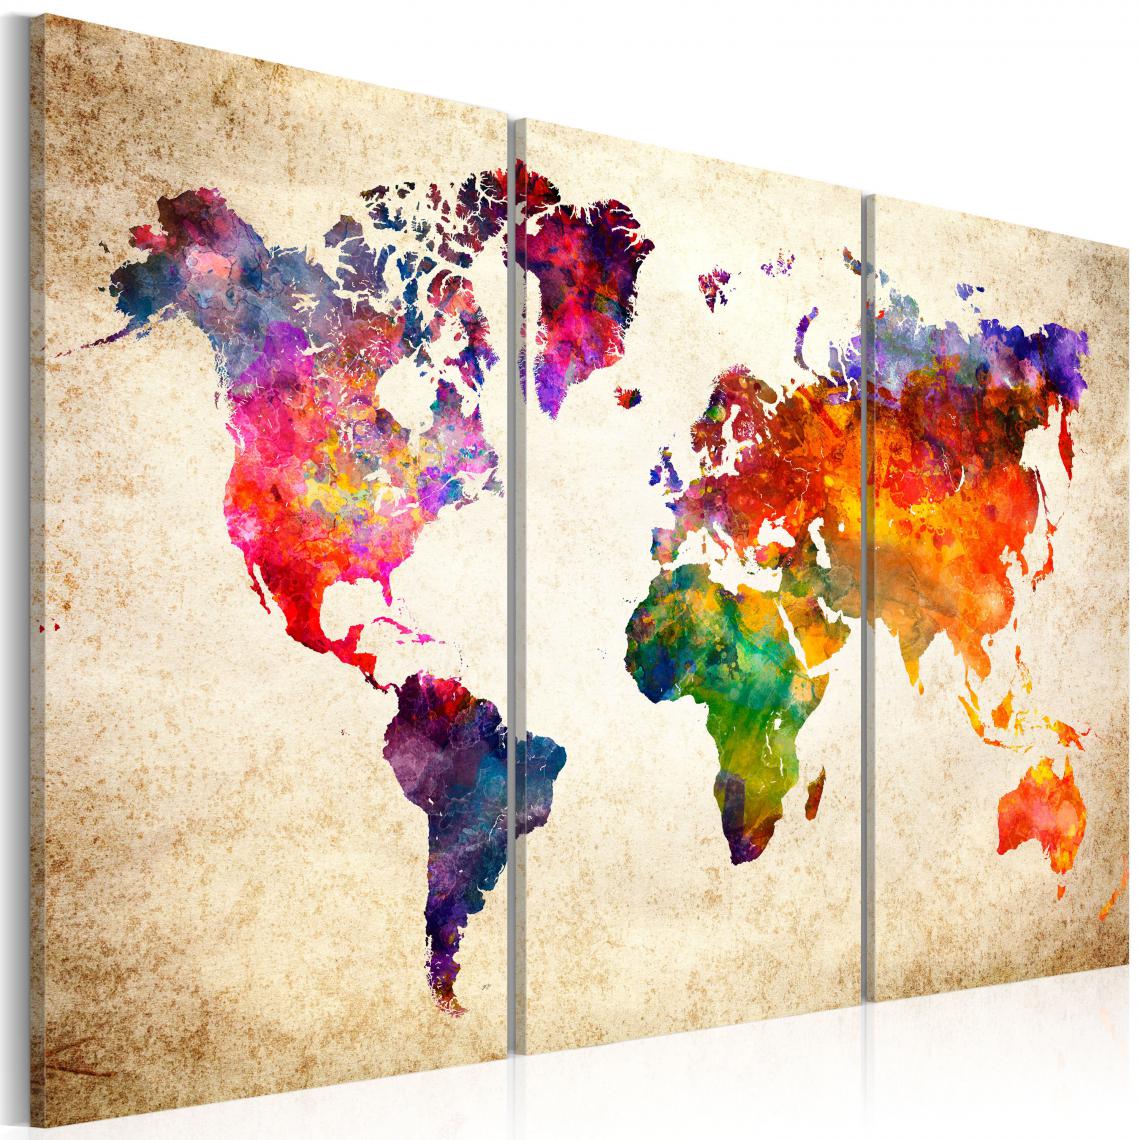 Decoshop26 - Tableau sur toile en 3 panneaux décoration murale image imprimée cadre en bois à suspendre La carte du monde à l'aquarelle 120x80 cm 11_0004474 - Tableaux, peintures